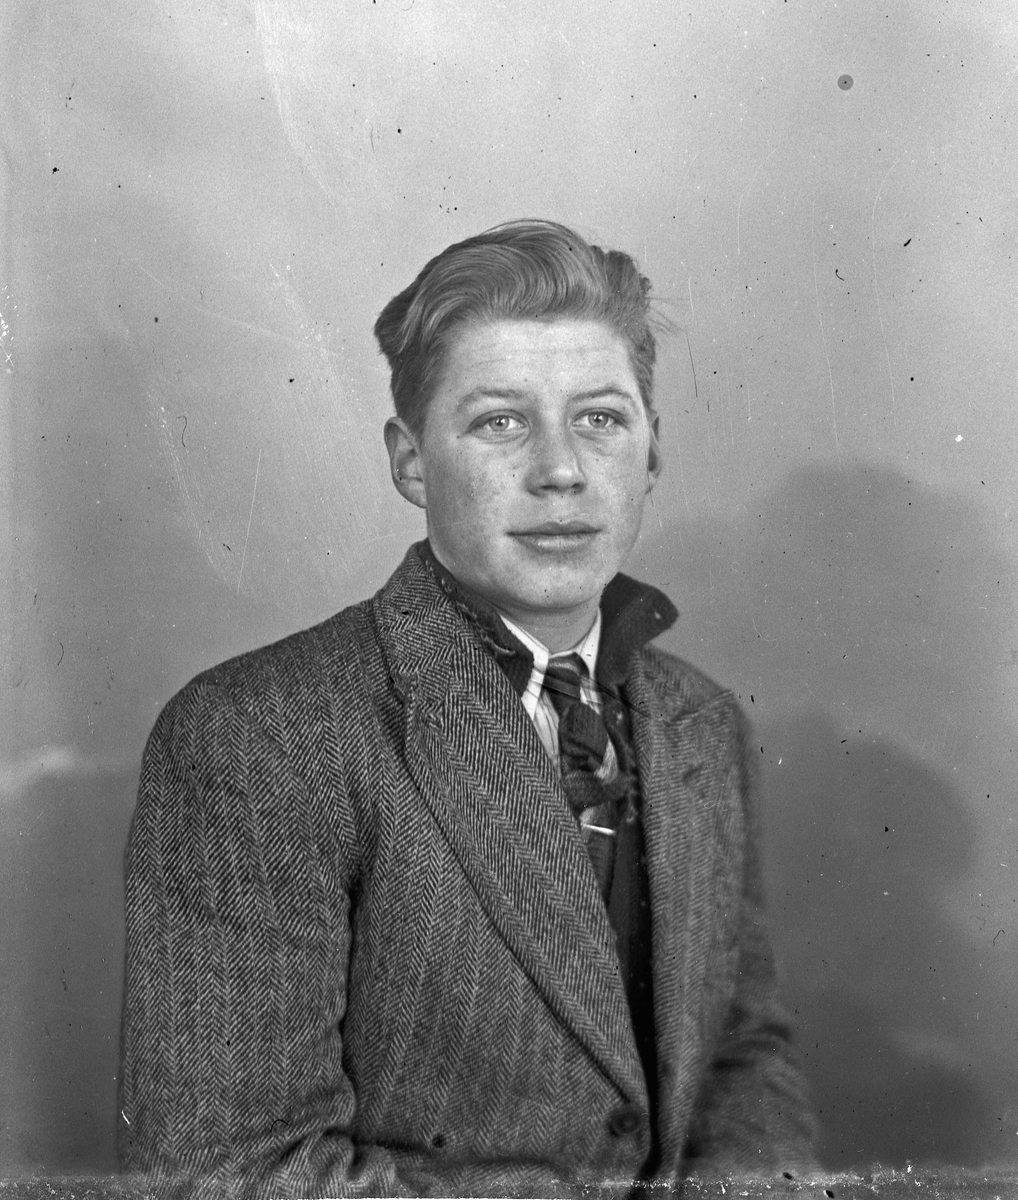 Gunnar Asakskogen fdt. 1925 el. 26 i Maura
15.02.2013:
Gunnar ble født i slutten av mai (26. tror jeg) i 1926 og døde i mars 2011.
Skrevet av: Runa Toftner